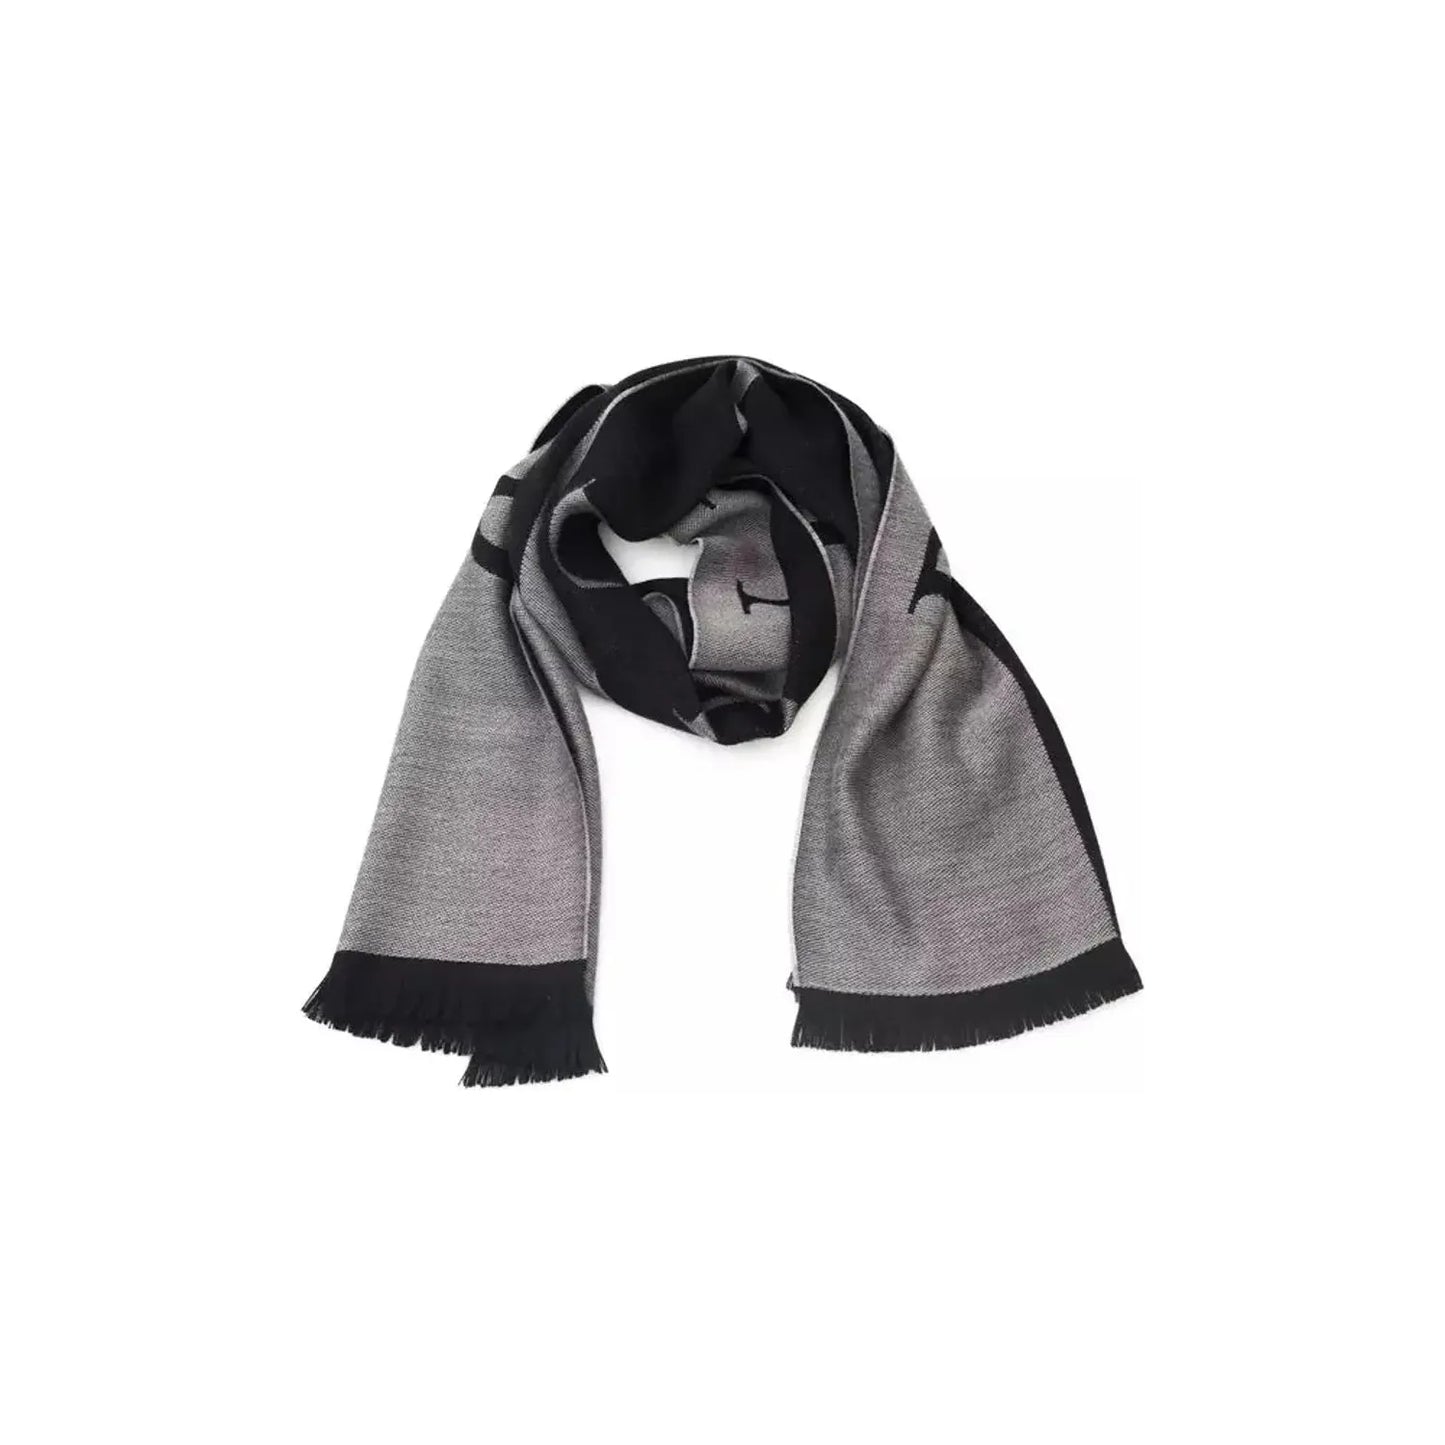 Philipp Plein Chic Gray Fringed Logo Scarf Wool Wrap Shawl Scarf grey-wool-scarf-3 product-22236-674383926-27-8b25de96-13a.webp